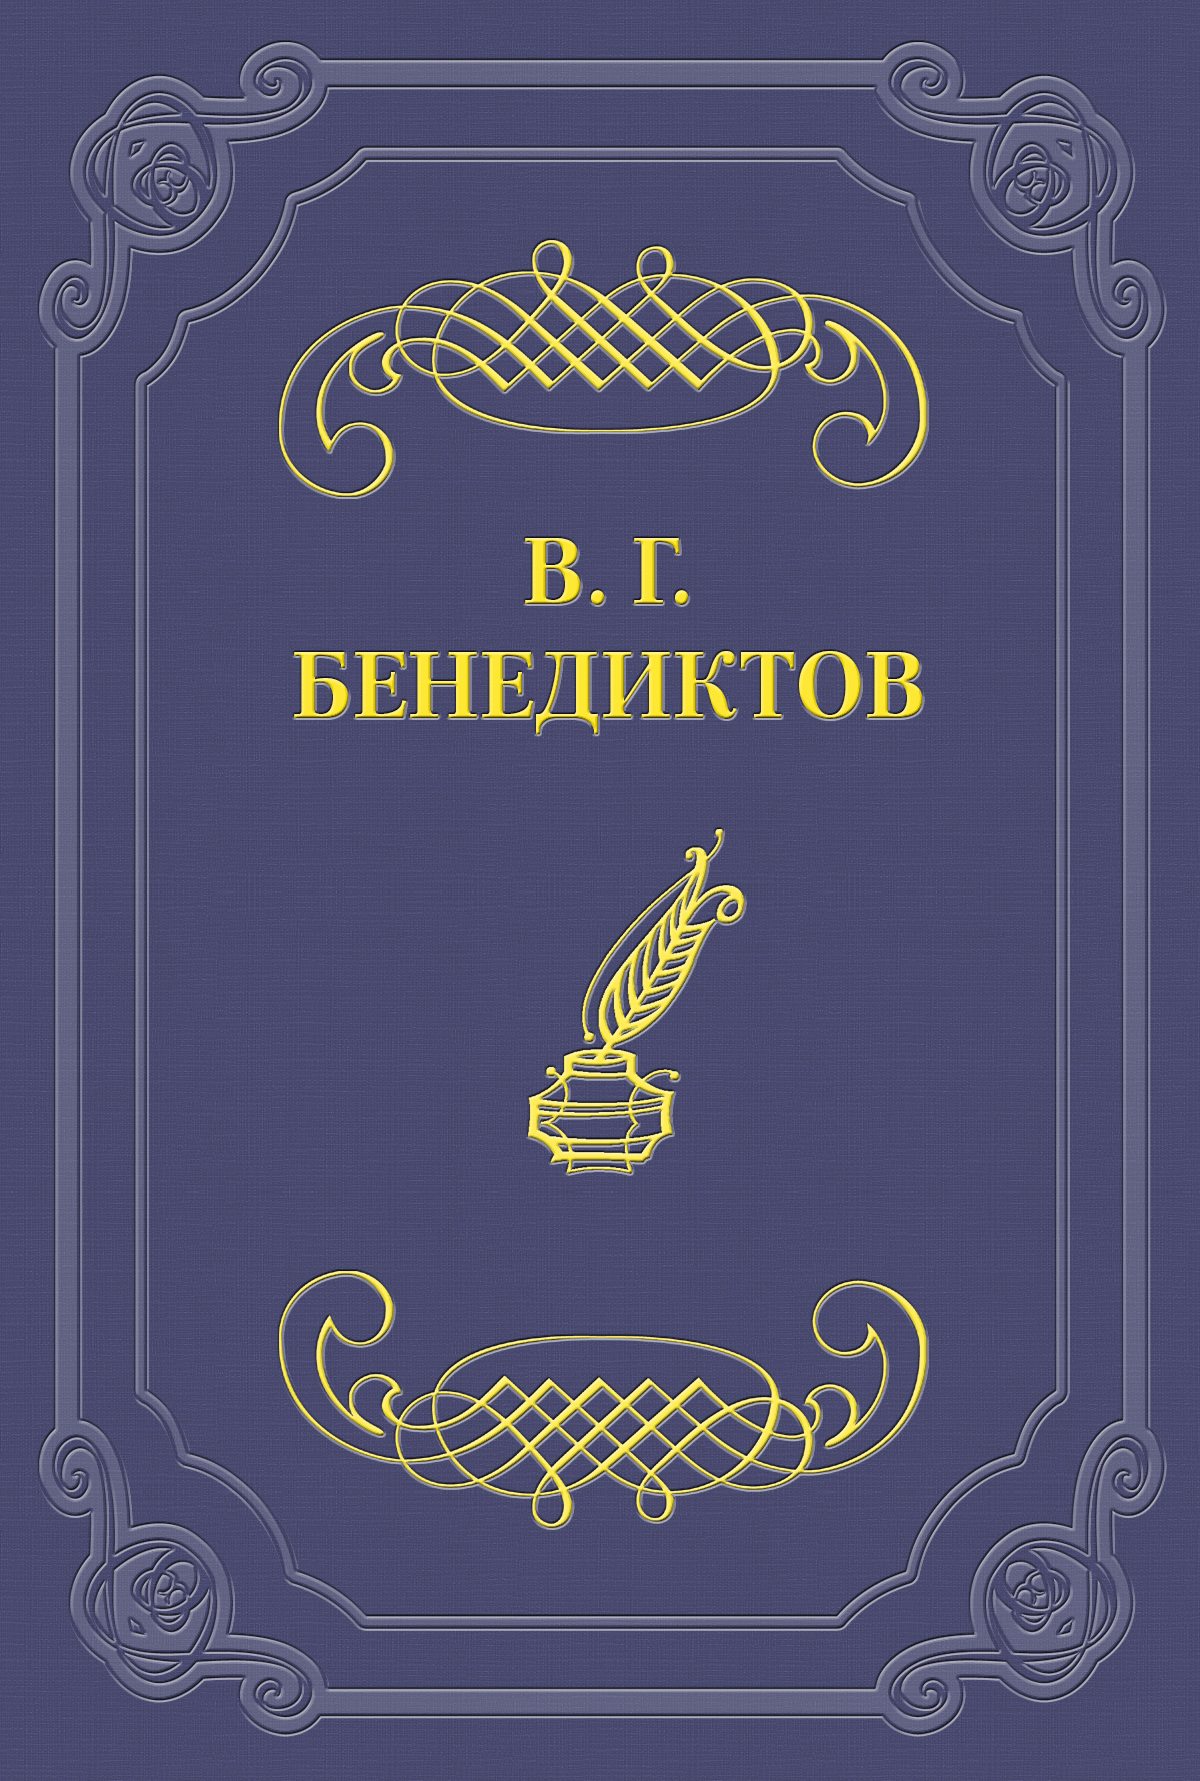 Владимир Бенедиктов Стихотворения 1838–1846 годов, не включавшиеся в сборники